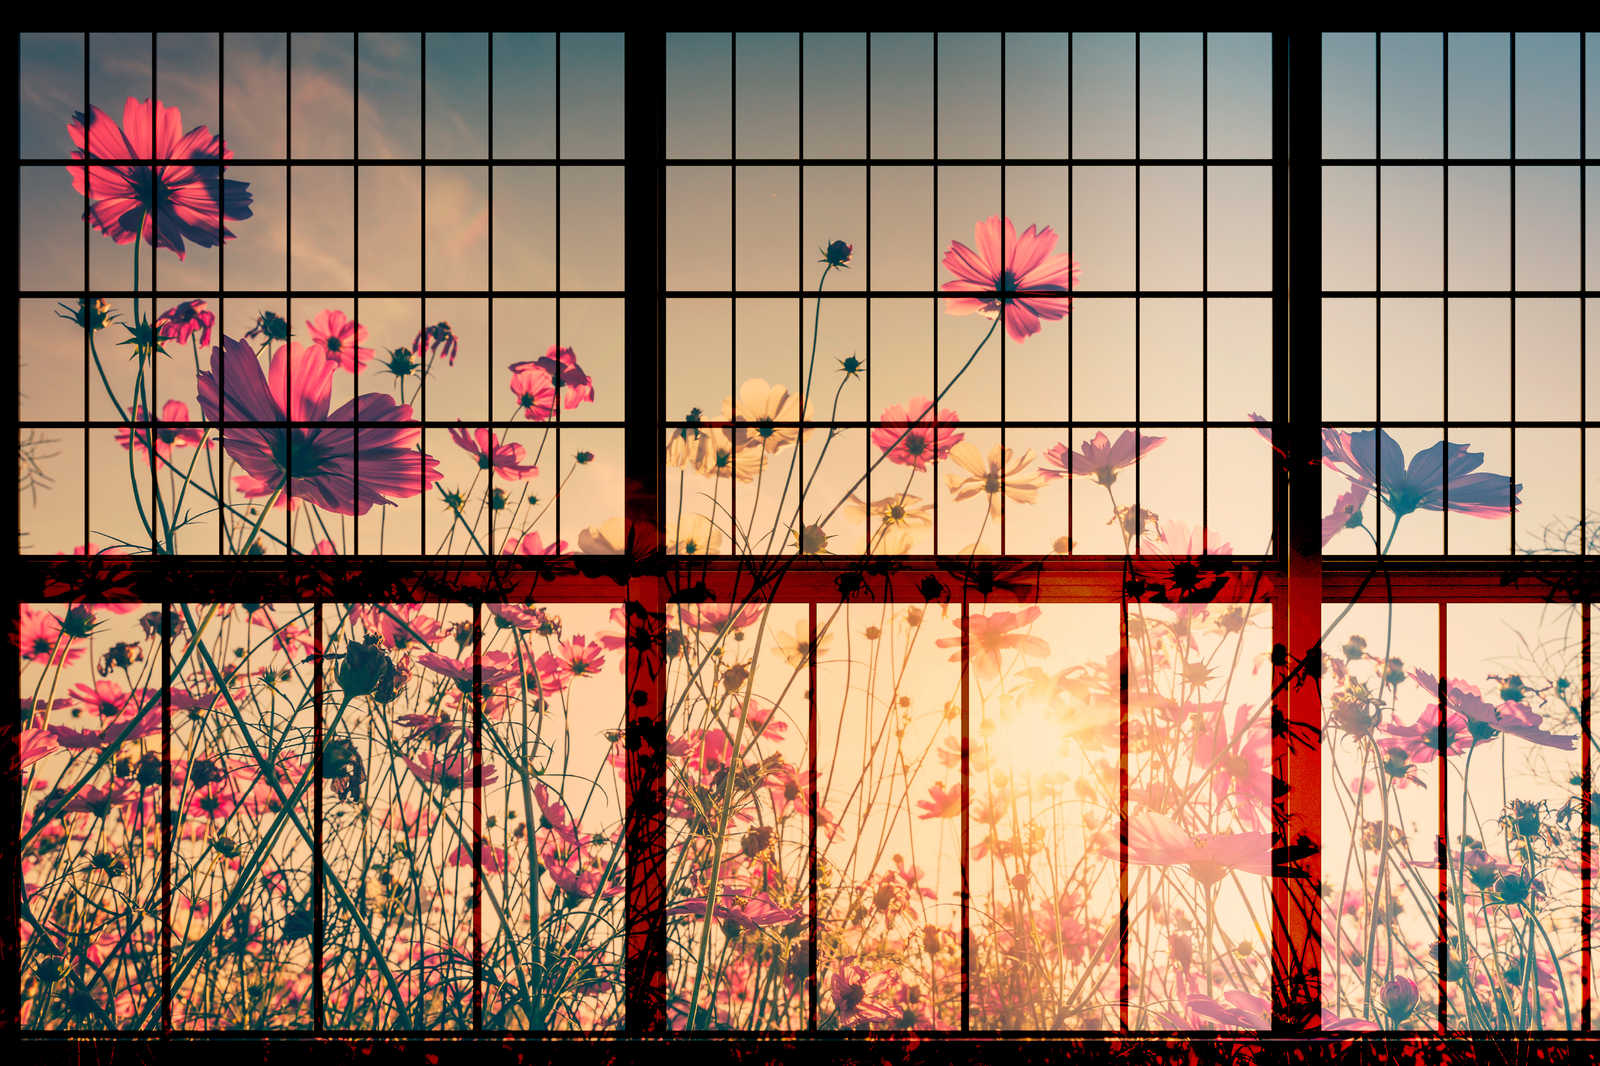             Meadow 1 - Sprossenfenster Leinwandbild mit Blumenwiese – 0,90 m x 0,60 m
        